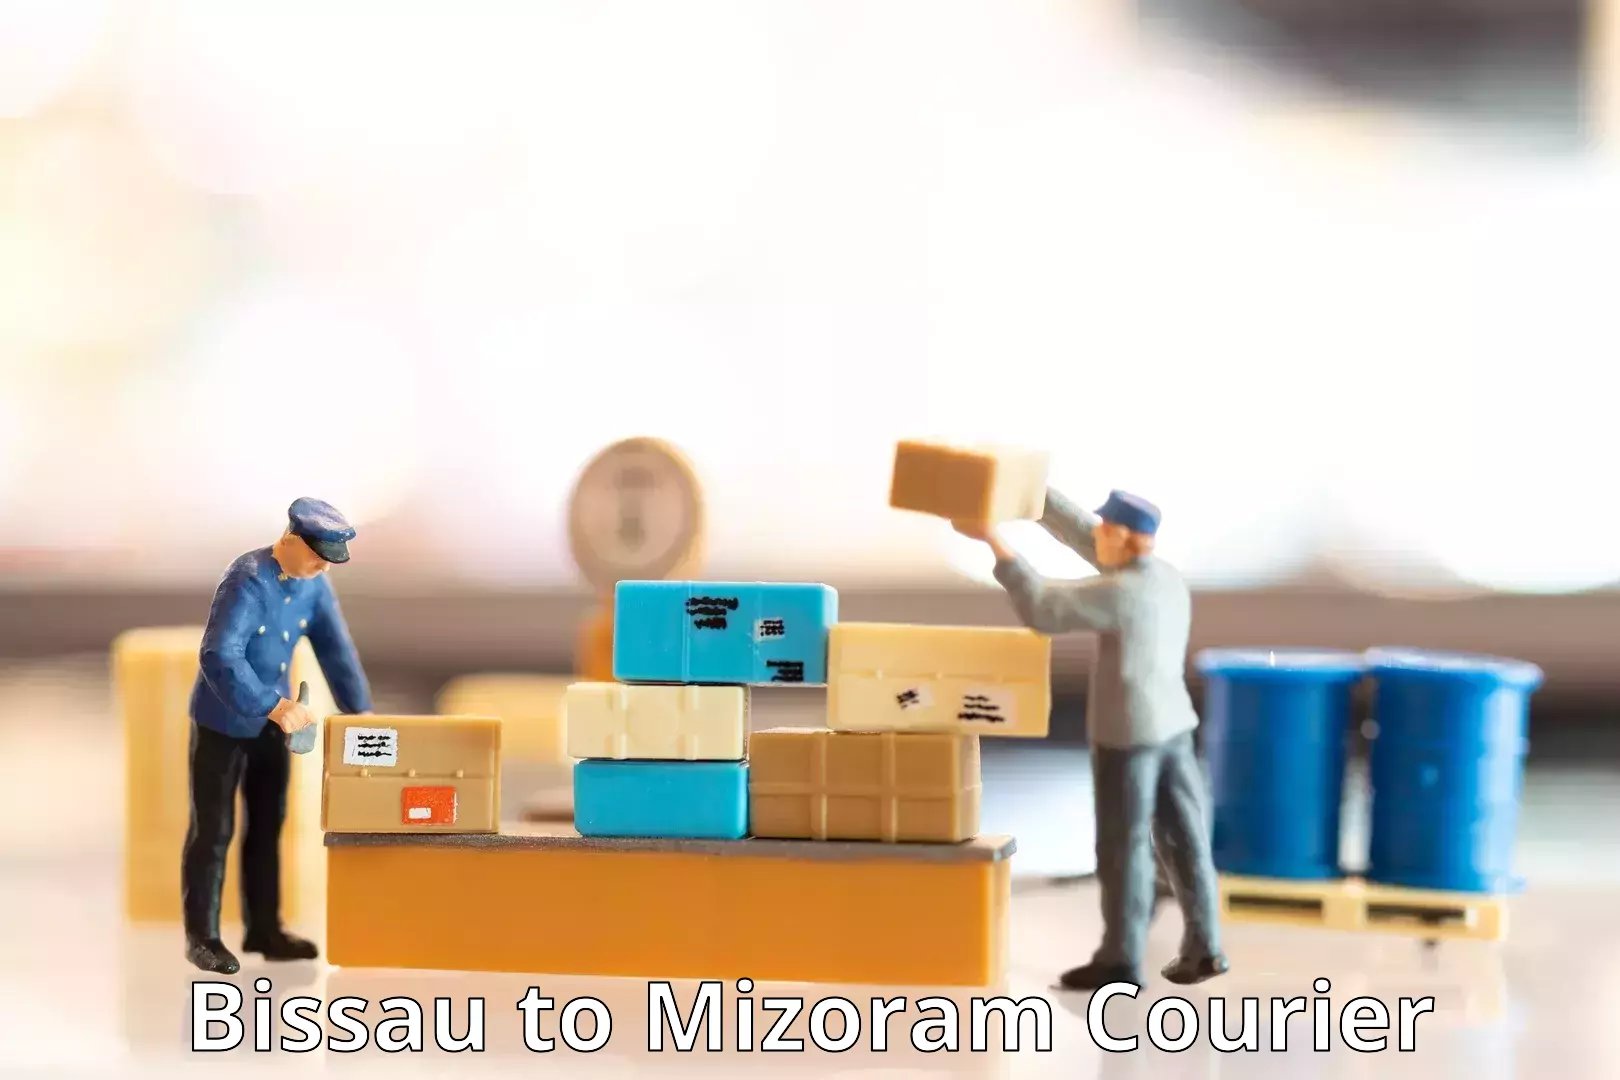 Next-generation courier services Bissau to Mizoram